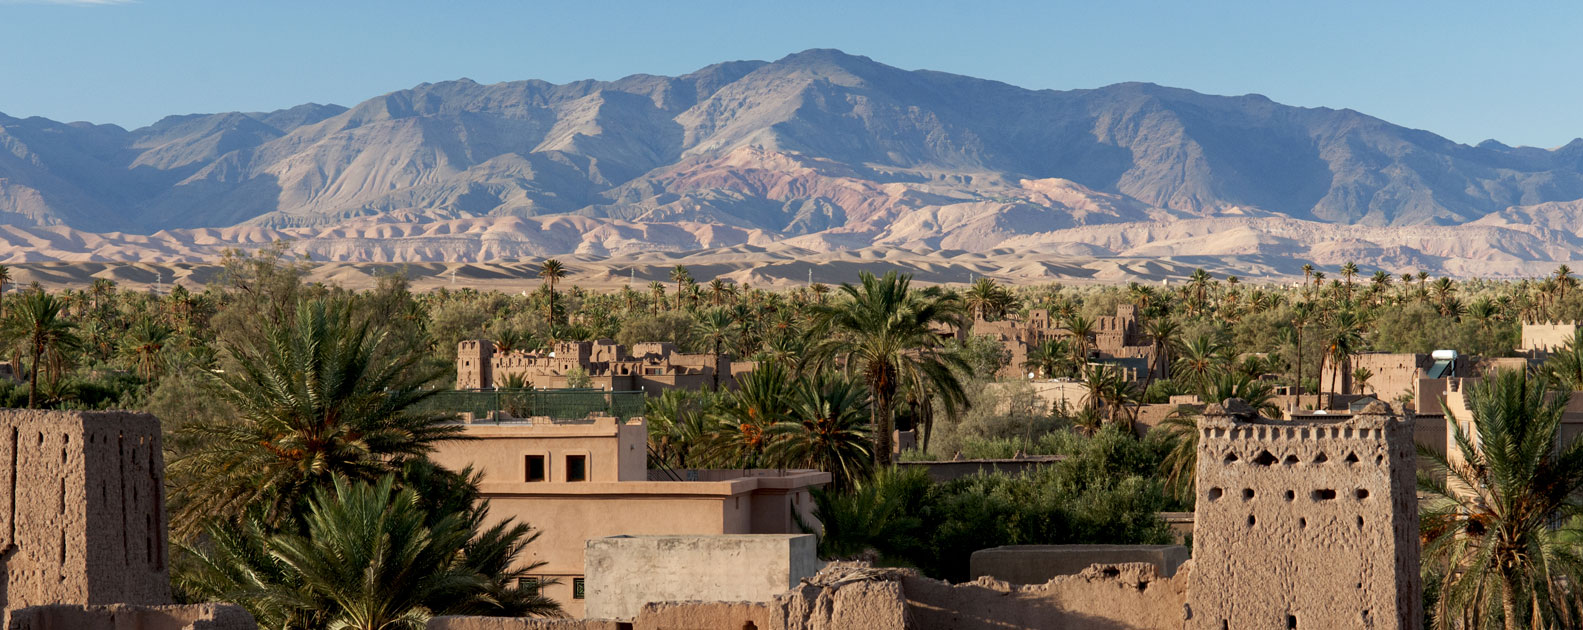 Ouarzazate-Zagora-Tinghir, un set de cinema imperdible 